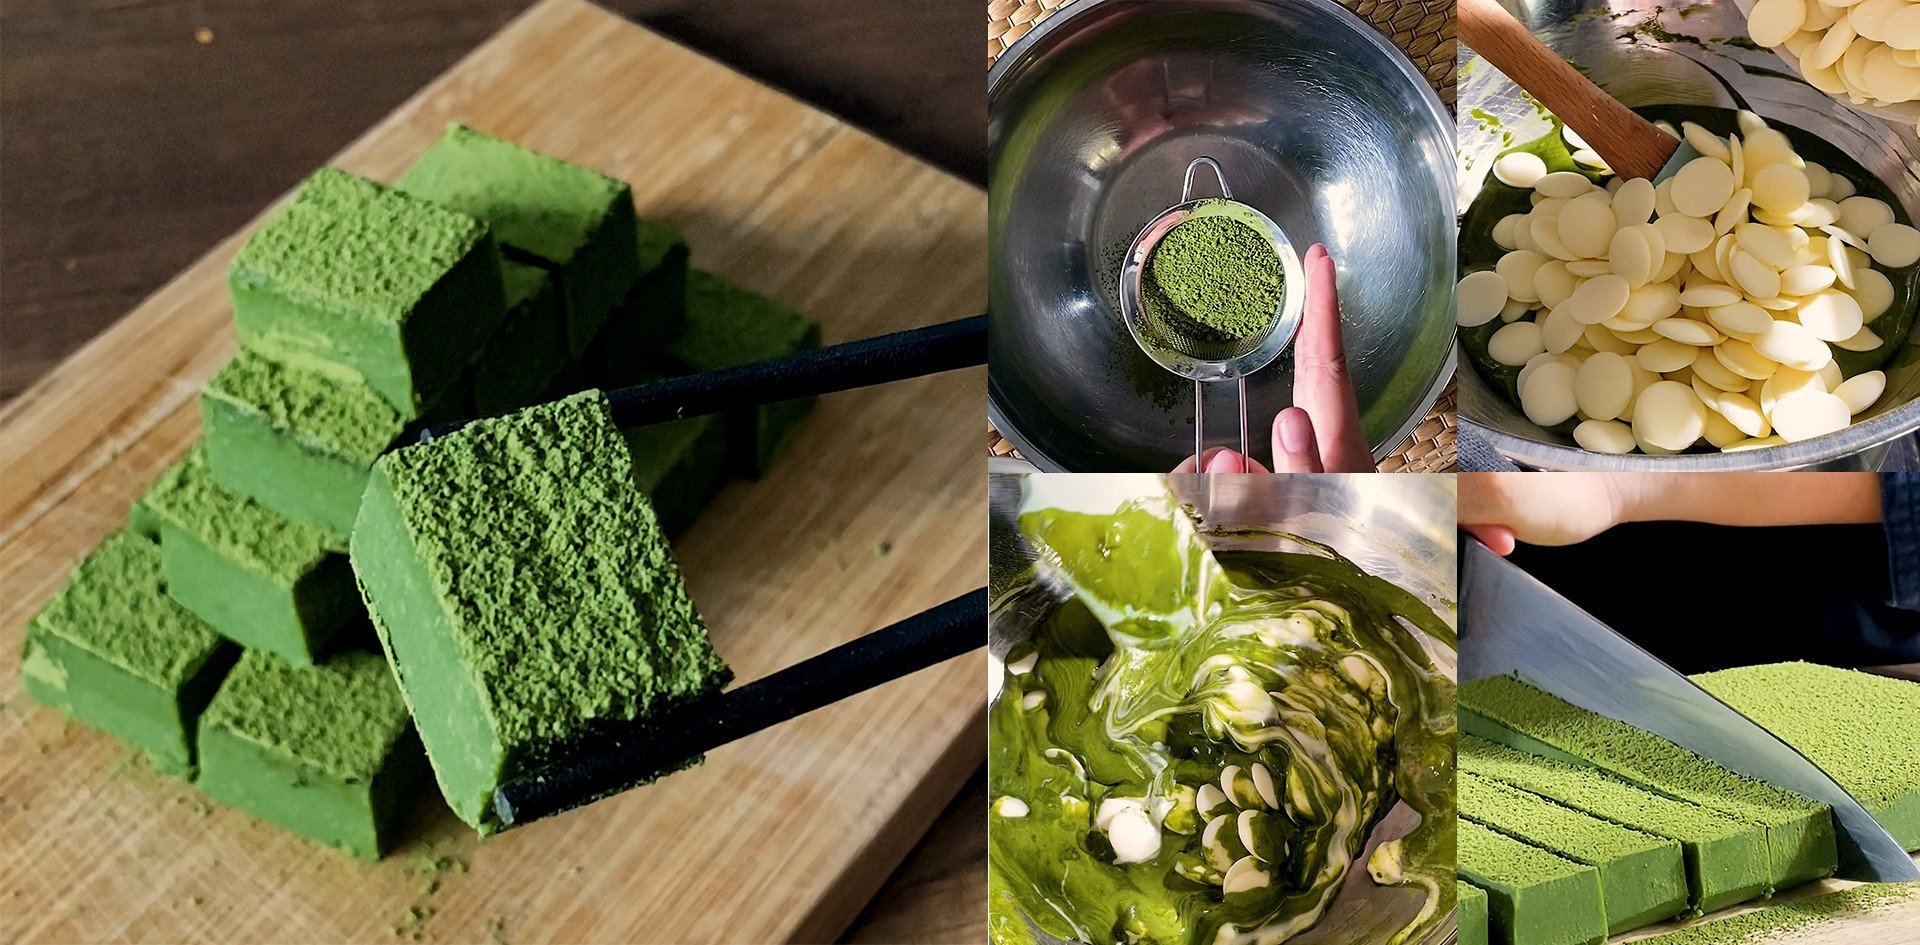 วิธีทำ “นามะช็อกโกแลตชาเขียว” เมนูของหวานสไตล์ญี่ปุ่น วาเลนไทน์ต้องลอง เมนูอาหารว่าง